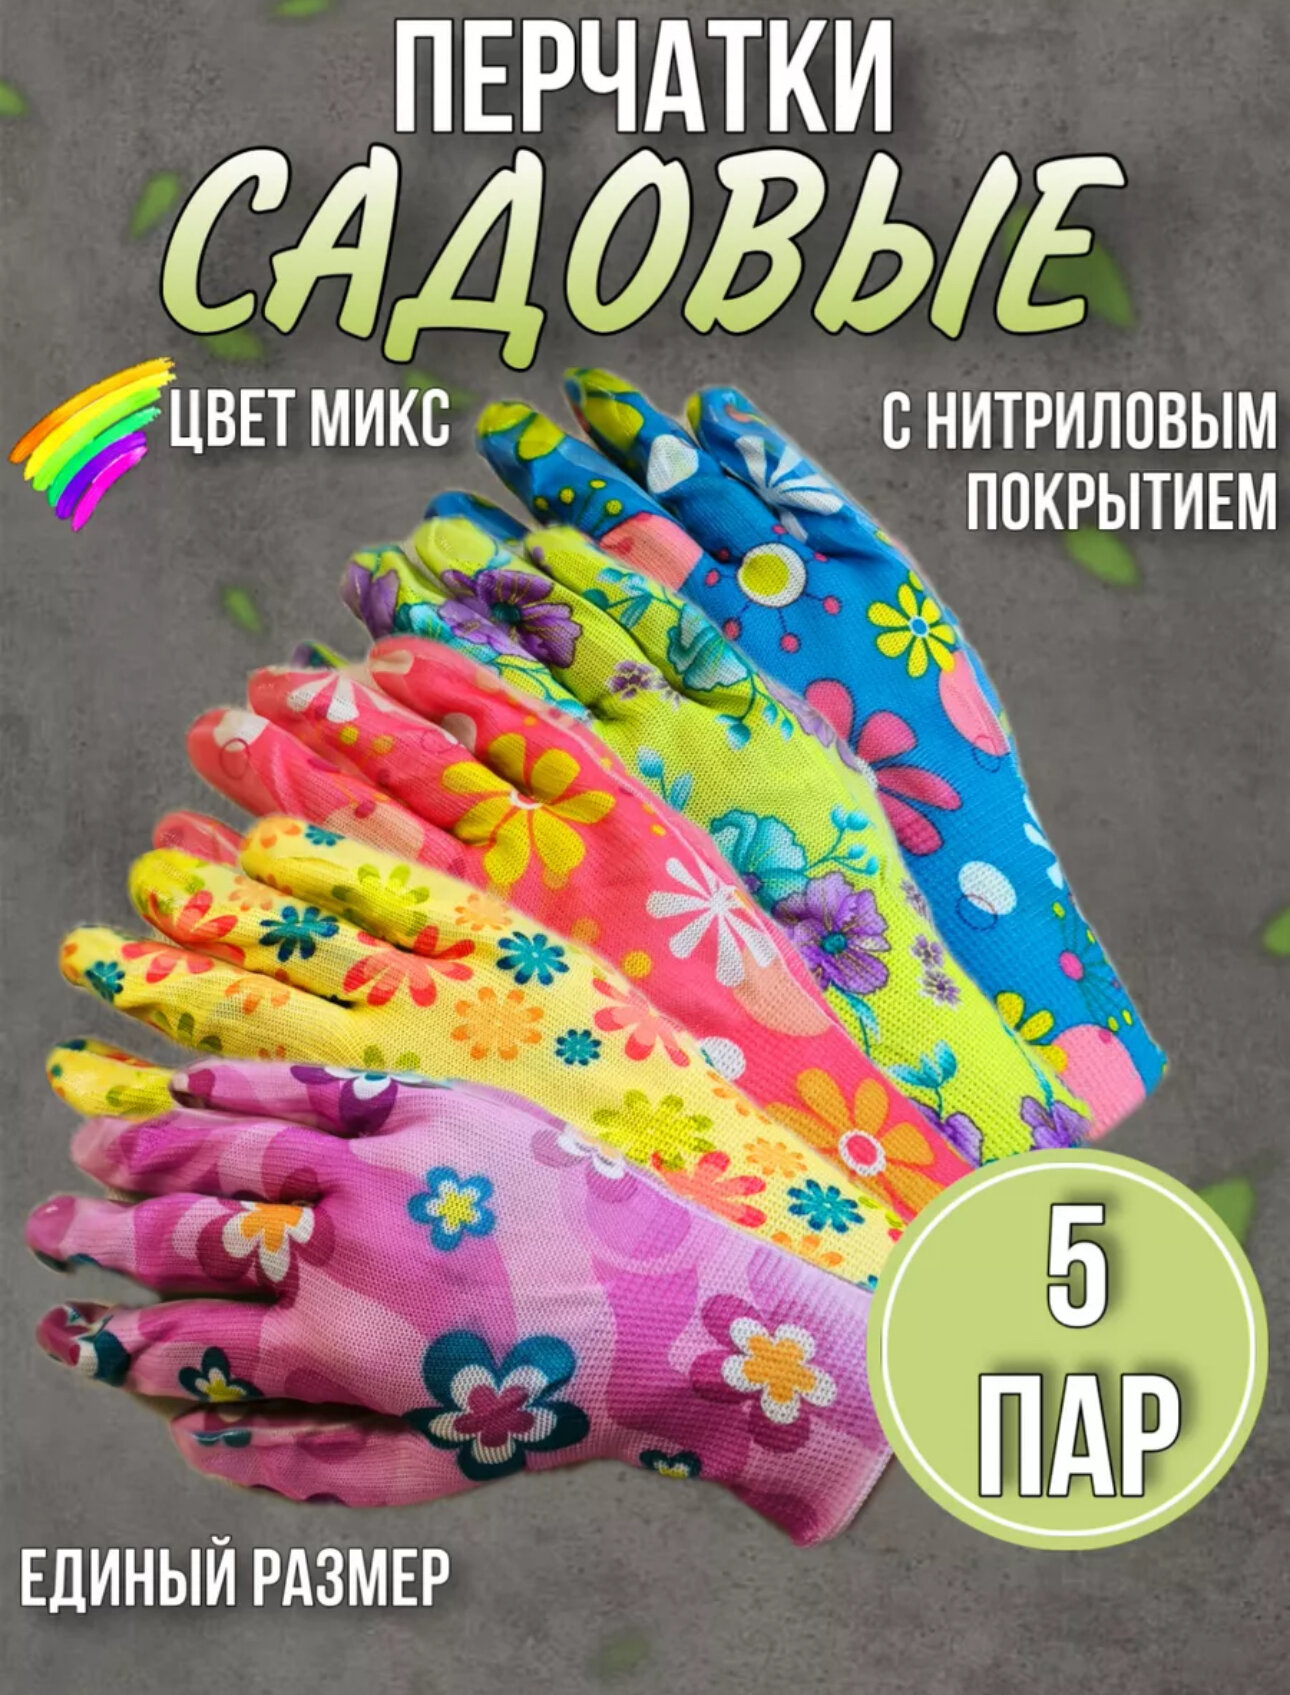 Перчатки садовые нейлоновые с нитриловым покрытием набор 5 штук / Многоразовые хозяйственные перчатки защитные разноцветные 5 шт